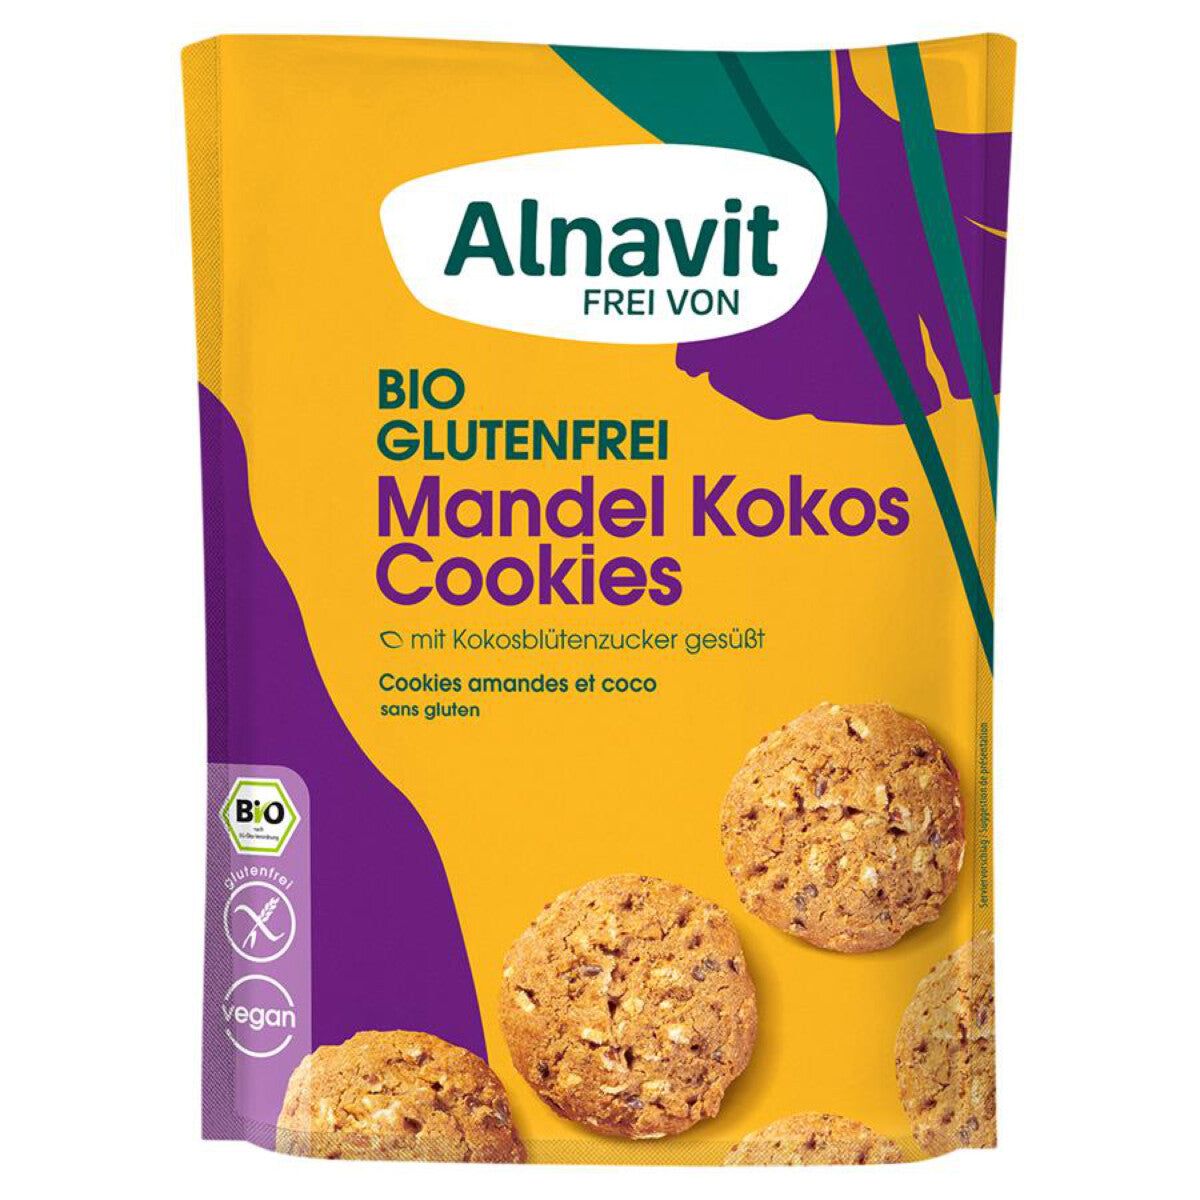 Alnavit Mandel Kokos Cookies glutenfrei